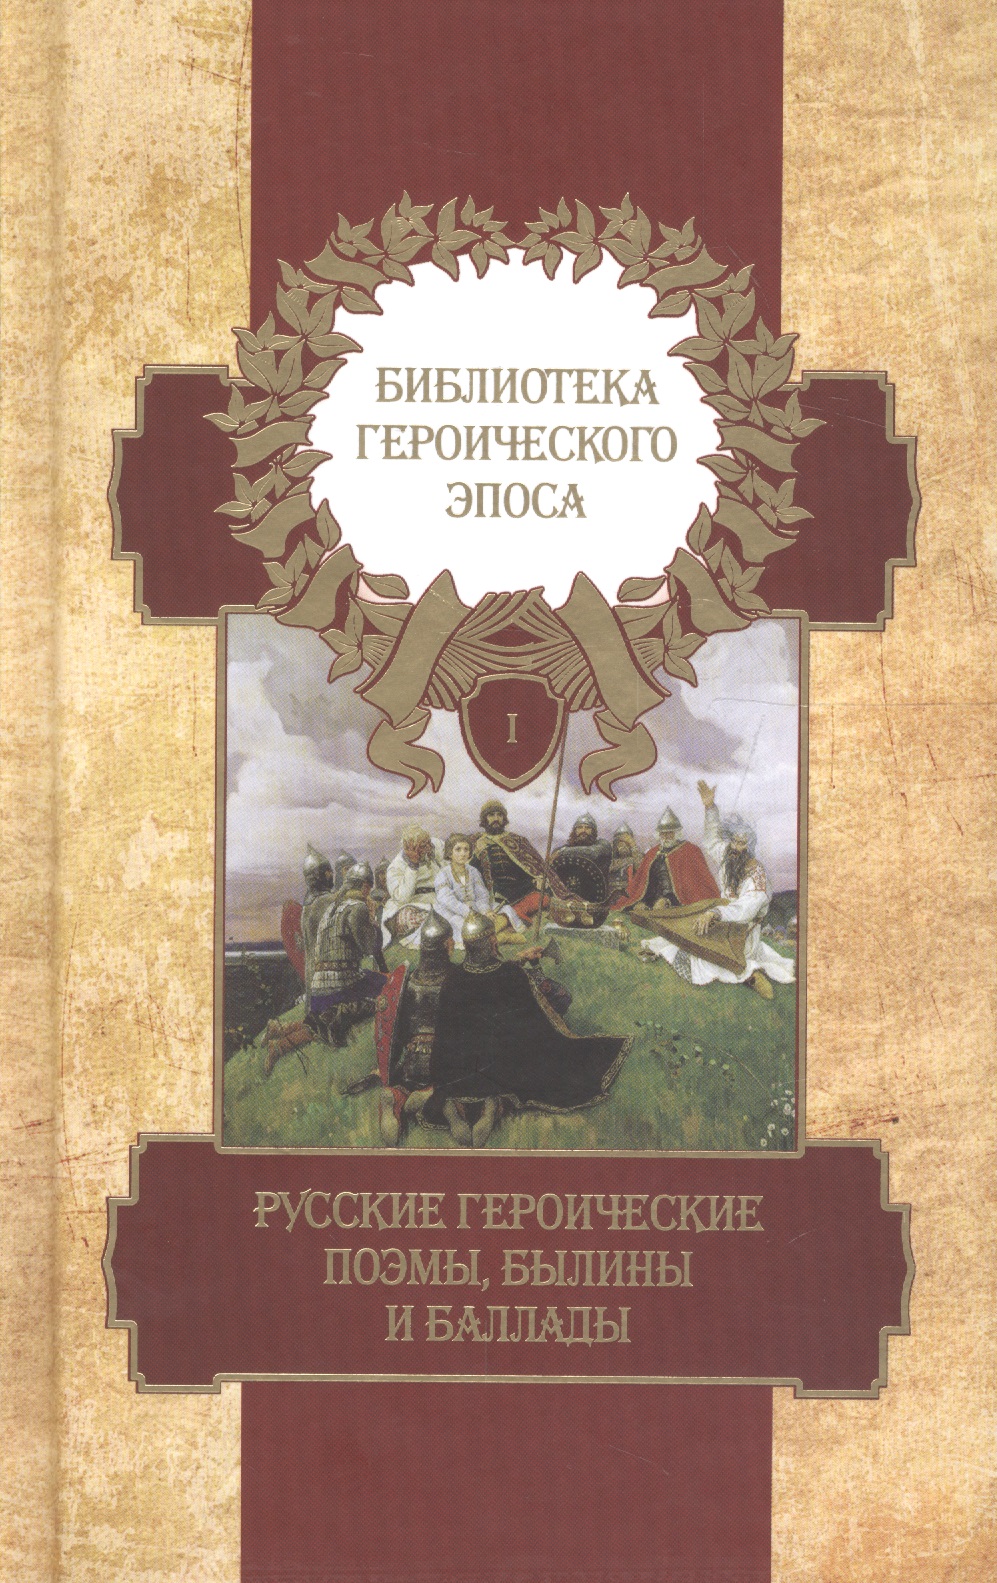 Библиотека героического эпоса. Том 1. Русские героические поэмы, былины и баллады былины русского народа